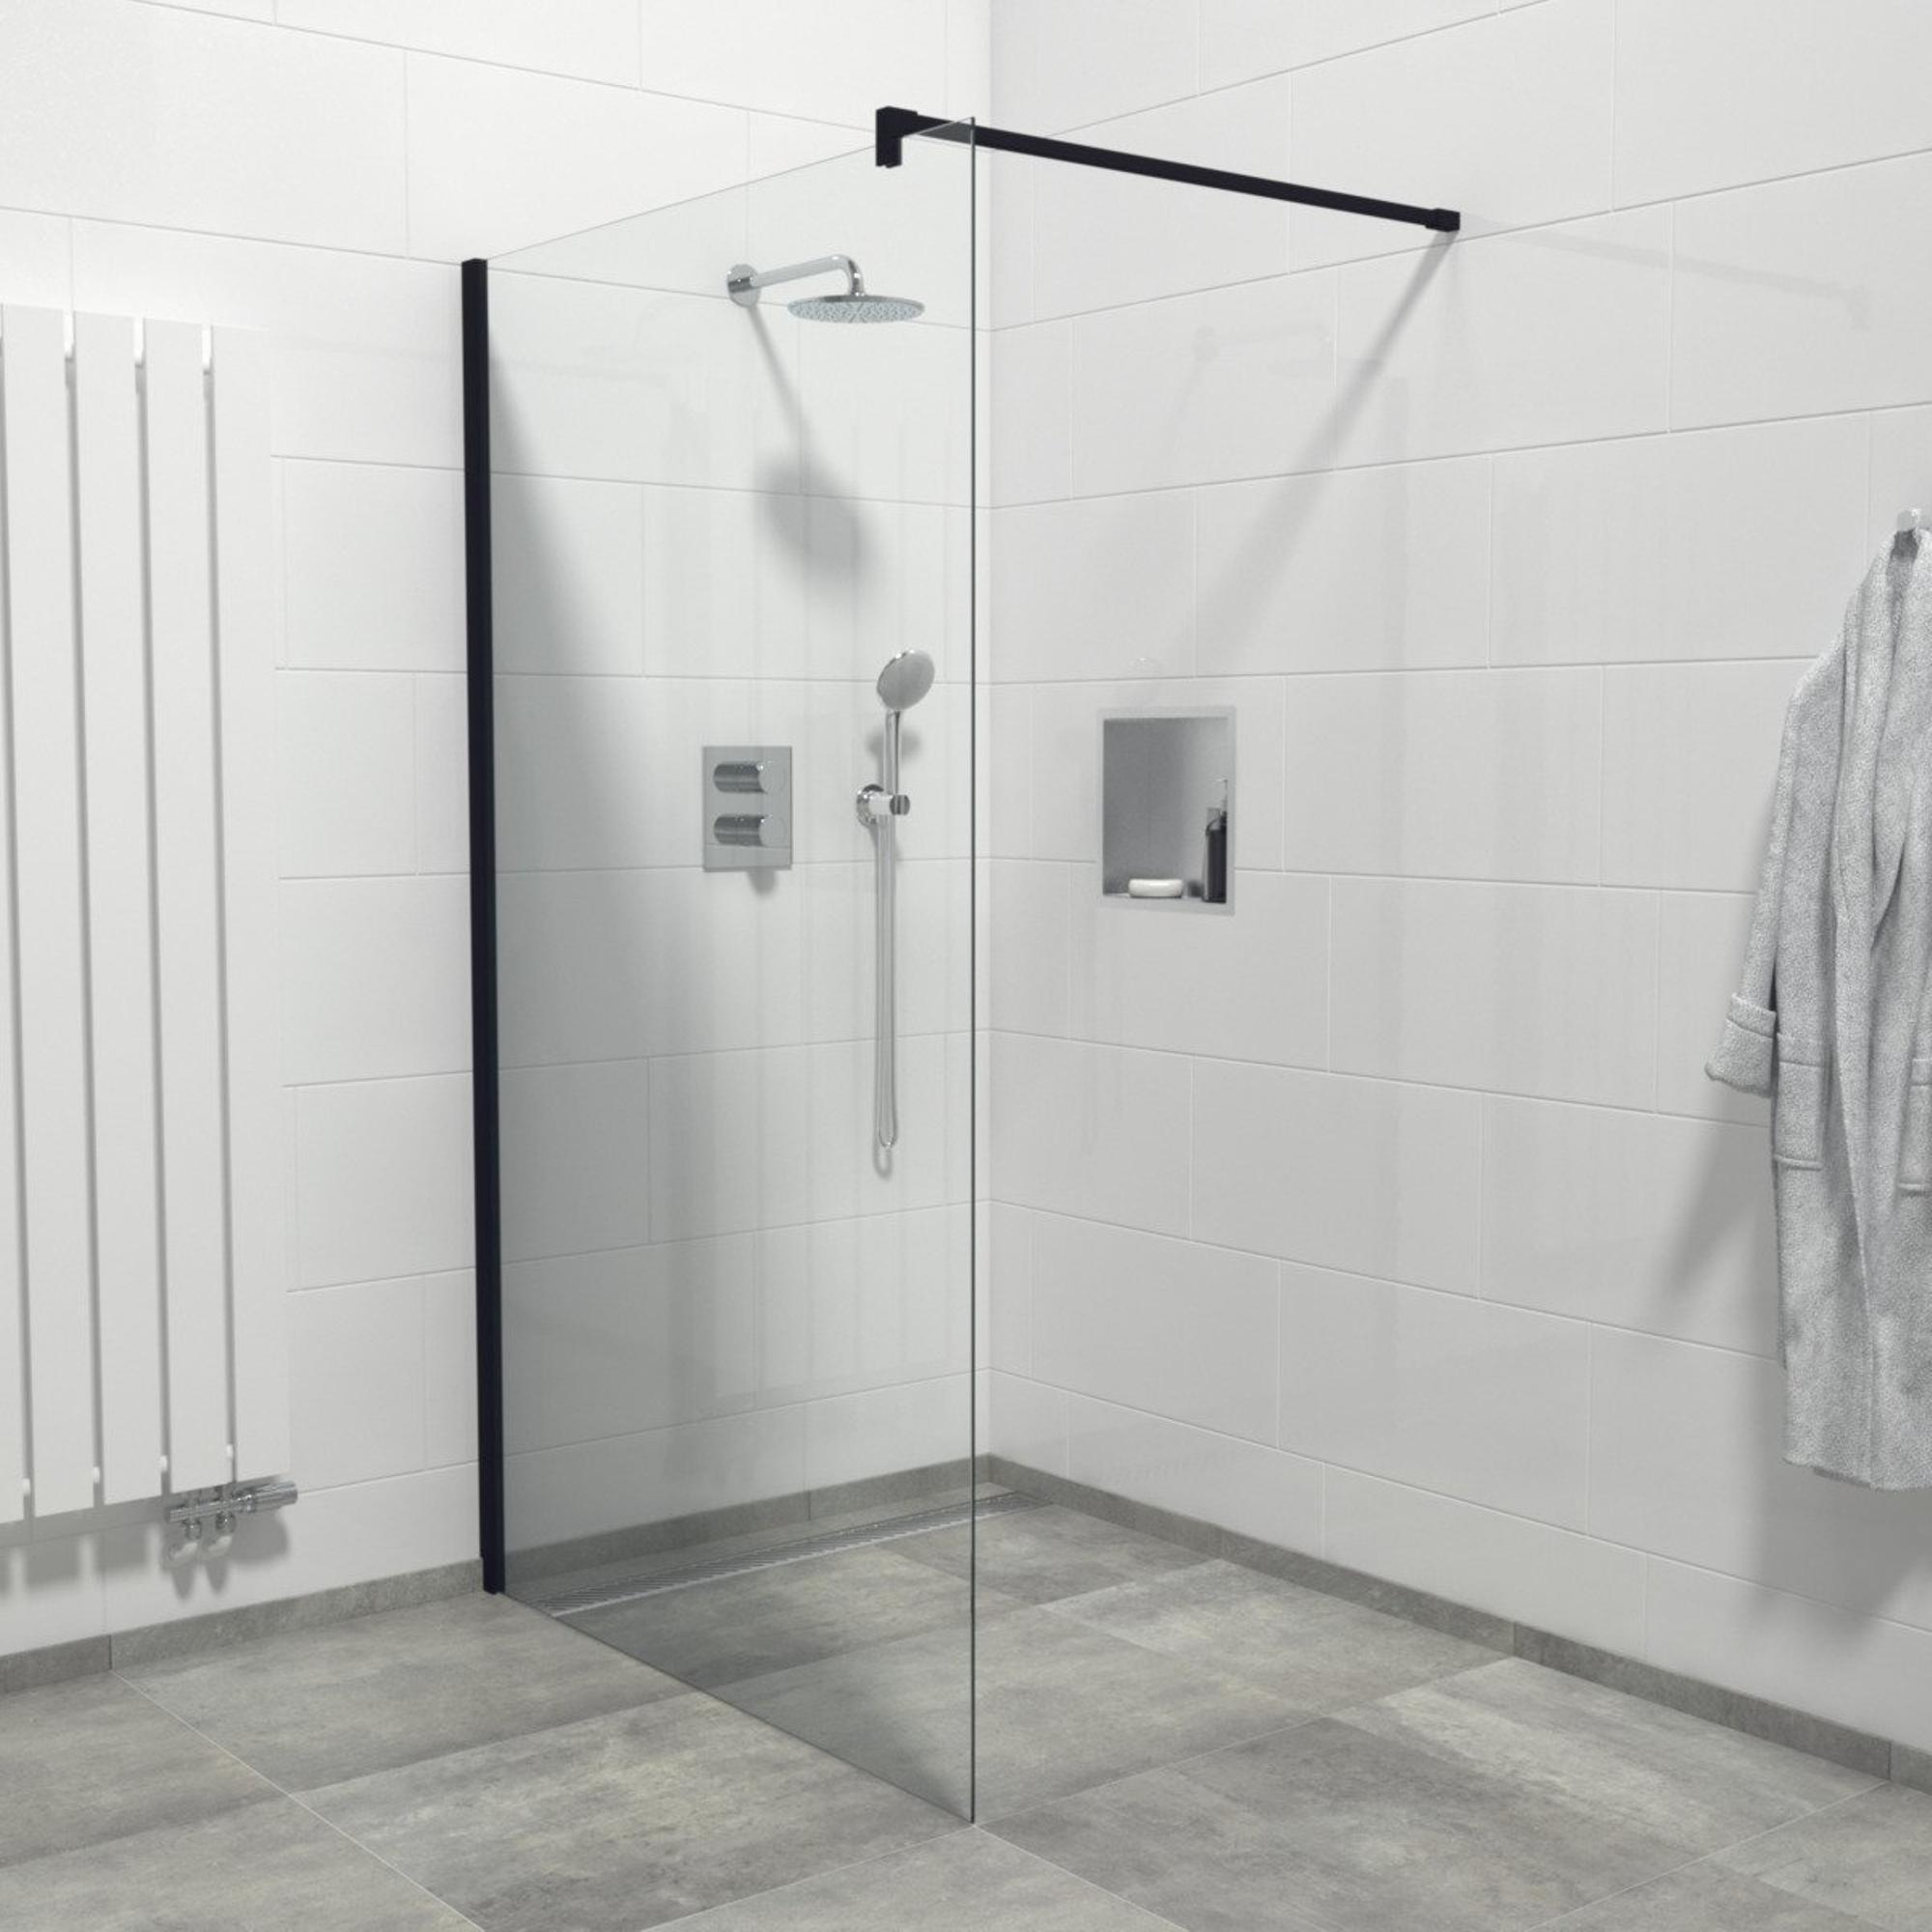 Douche en verre: 7 conseils pour nettoyer les parois